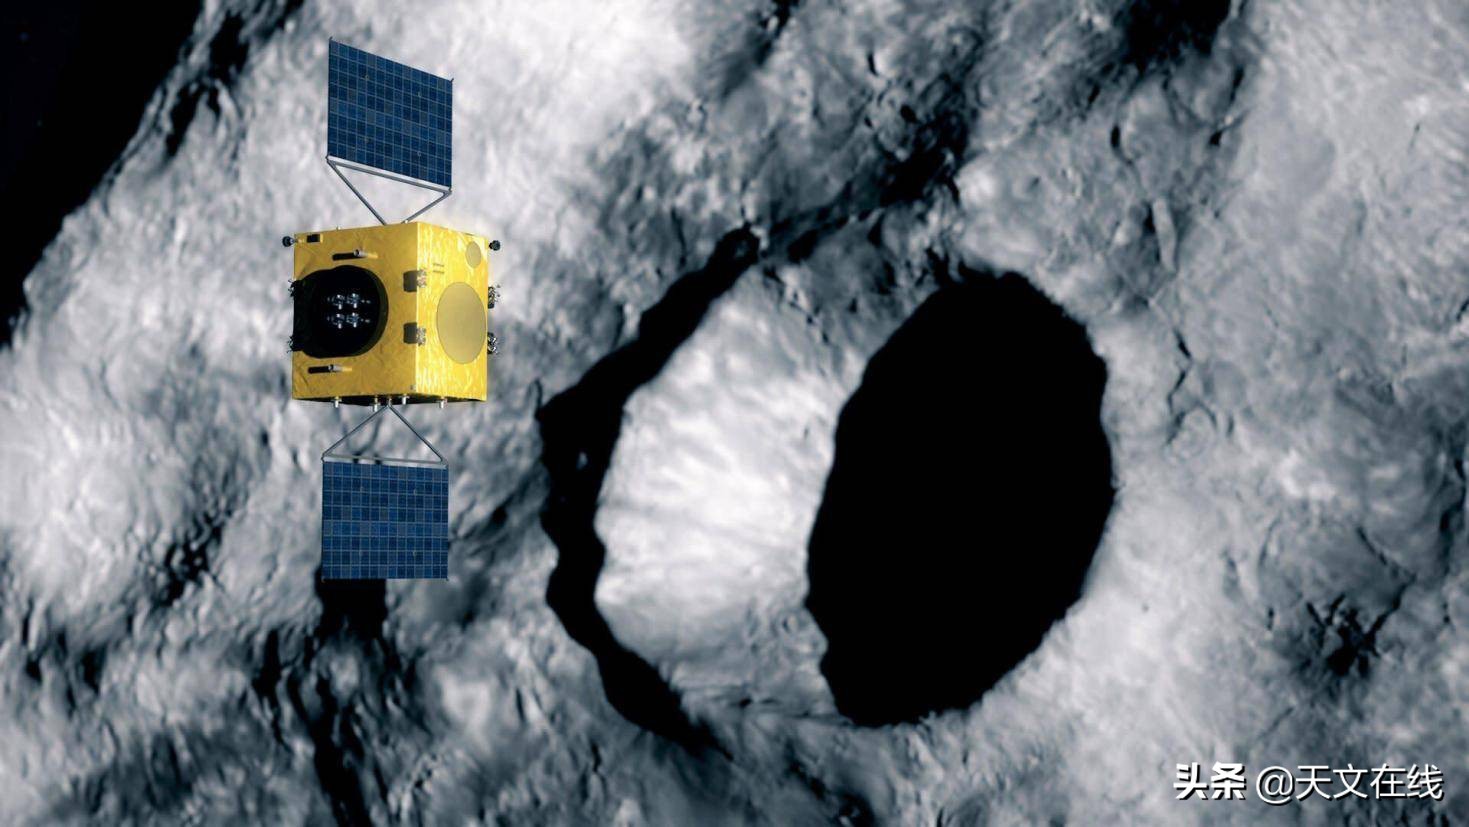 小行星航天器碰撞研究任务在欧洲正式启动